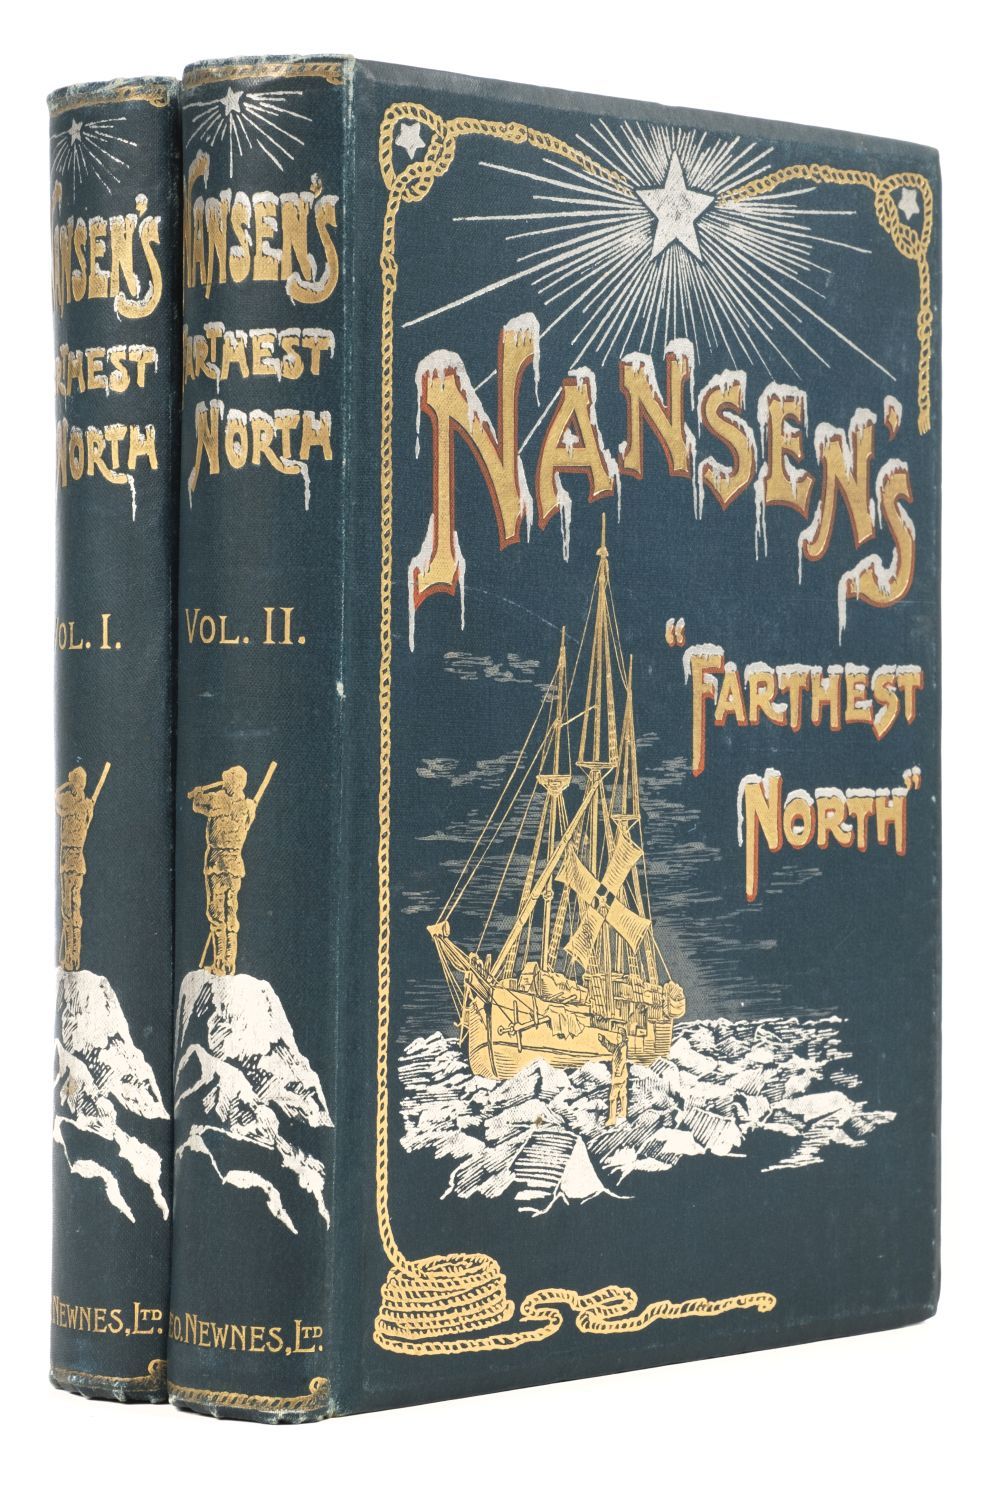 Nansen (Fridtjof). "Farthest North", 1898